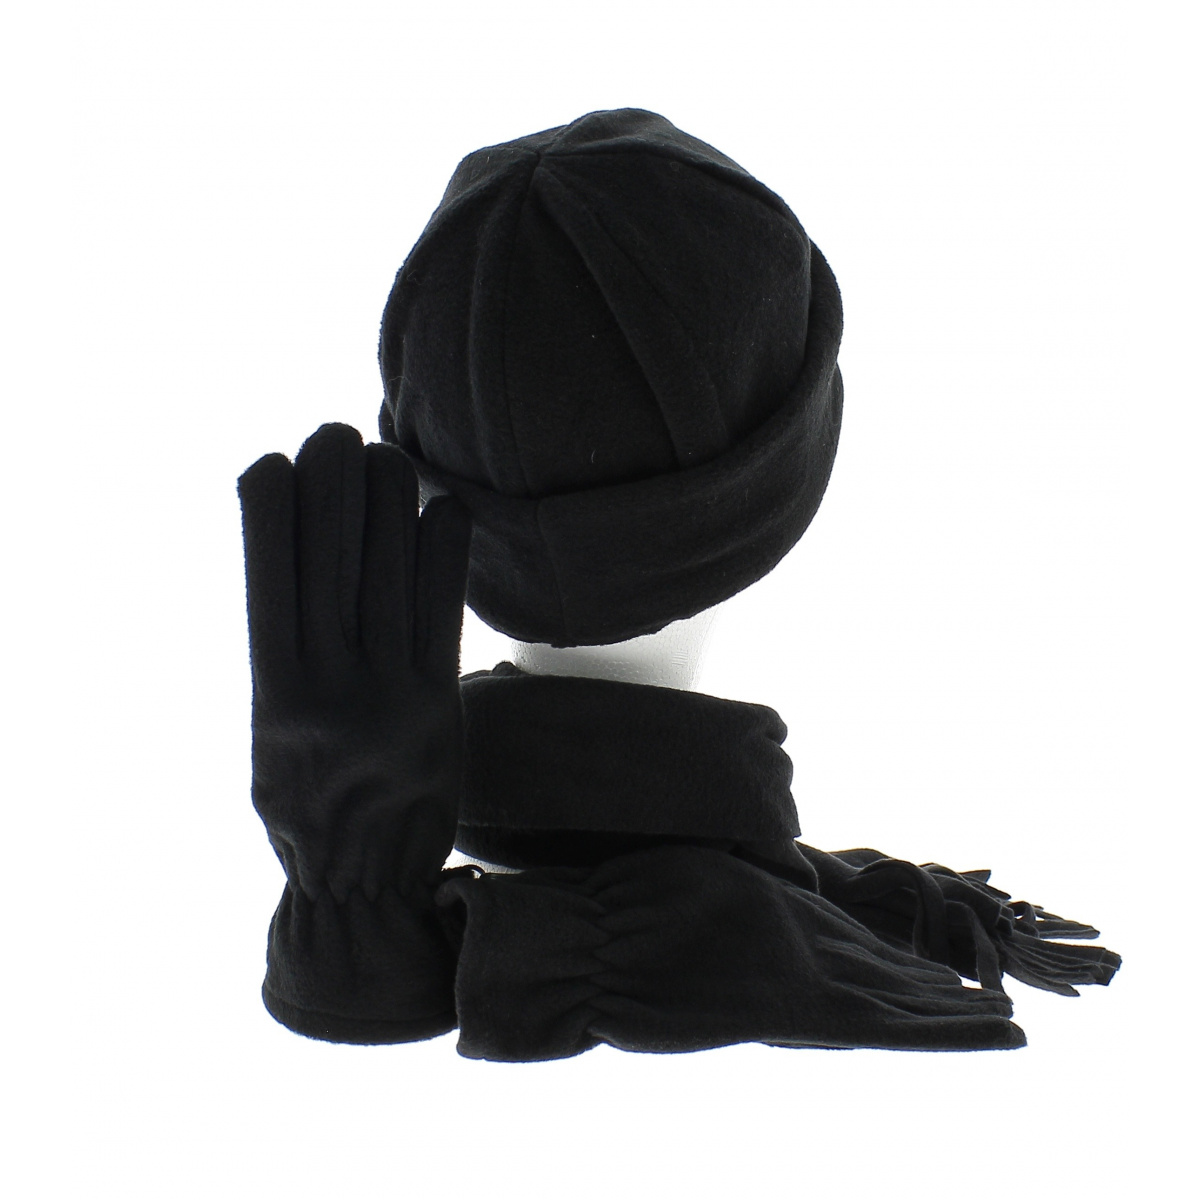 ensemble bonnet echarpe et gant assortis Reference : 2102